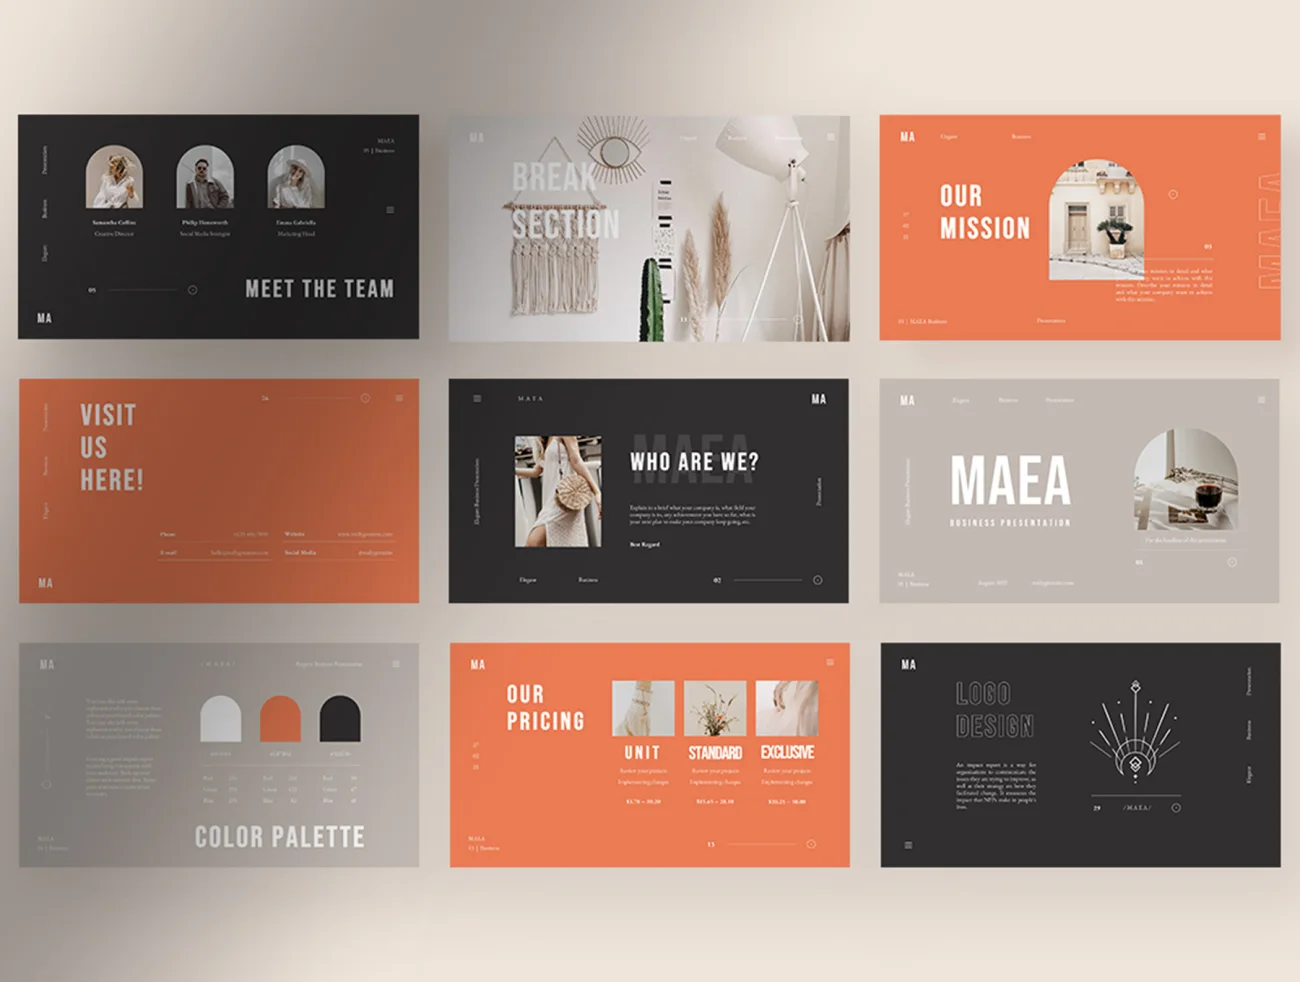 30页优雅极简品牌标识VIS展示 Maea - Elegant Minimalist Brand Identity Presentation-UI/UX、ui套件、品牌VI、图案设计、平面广告-到位啦UI